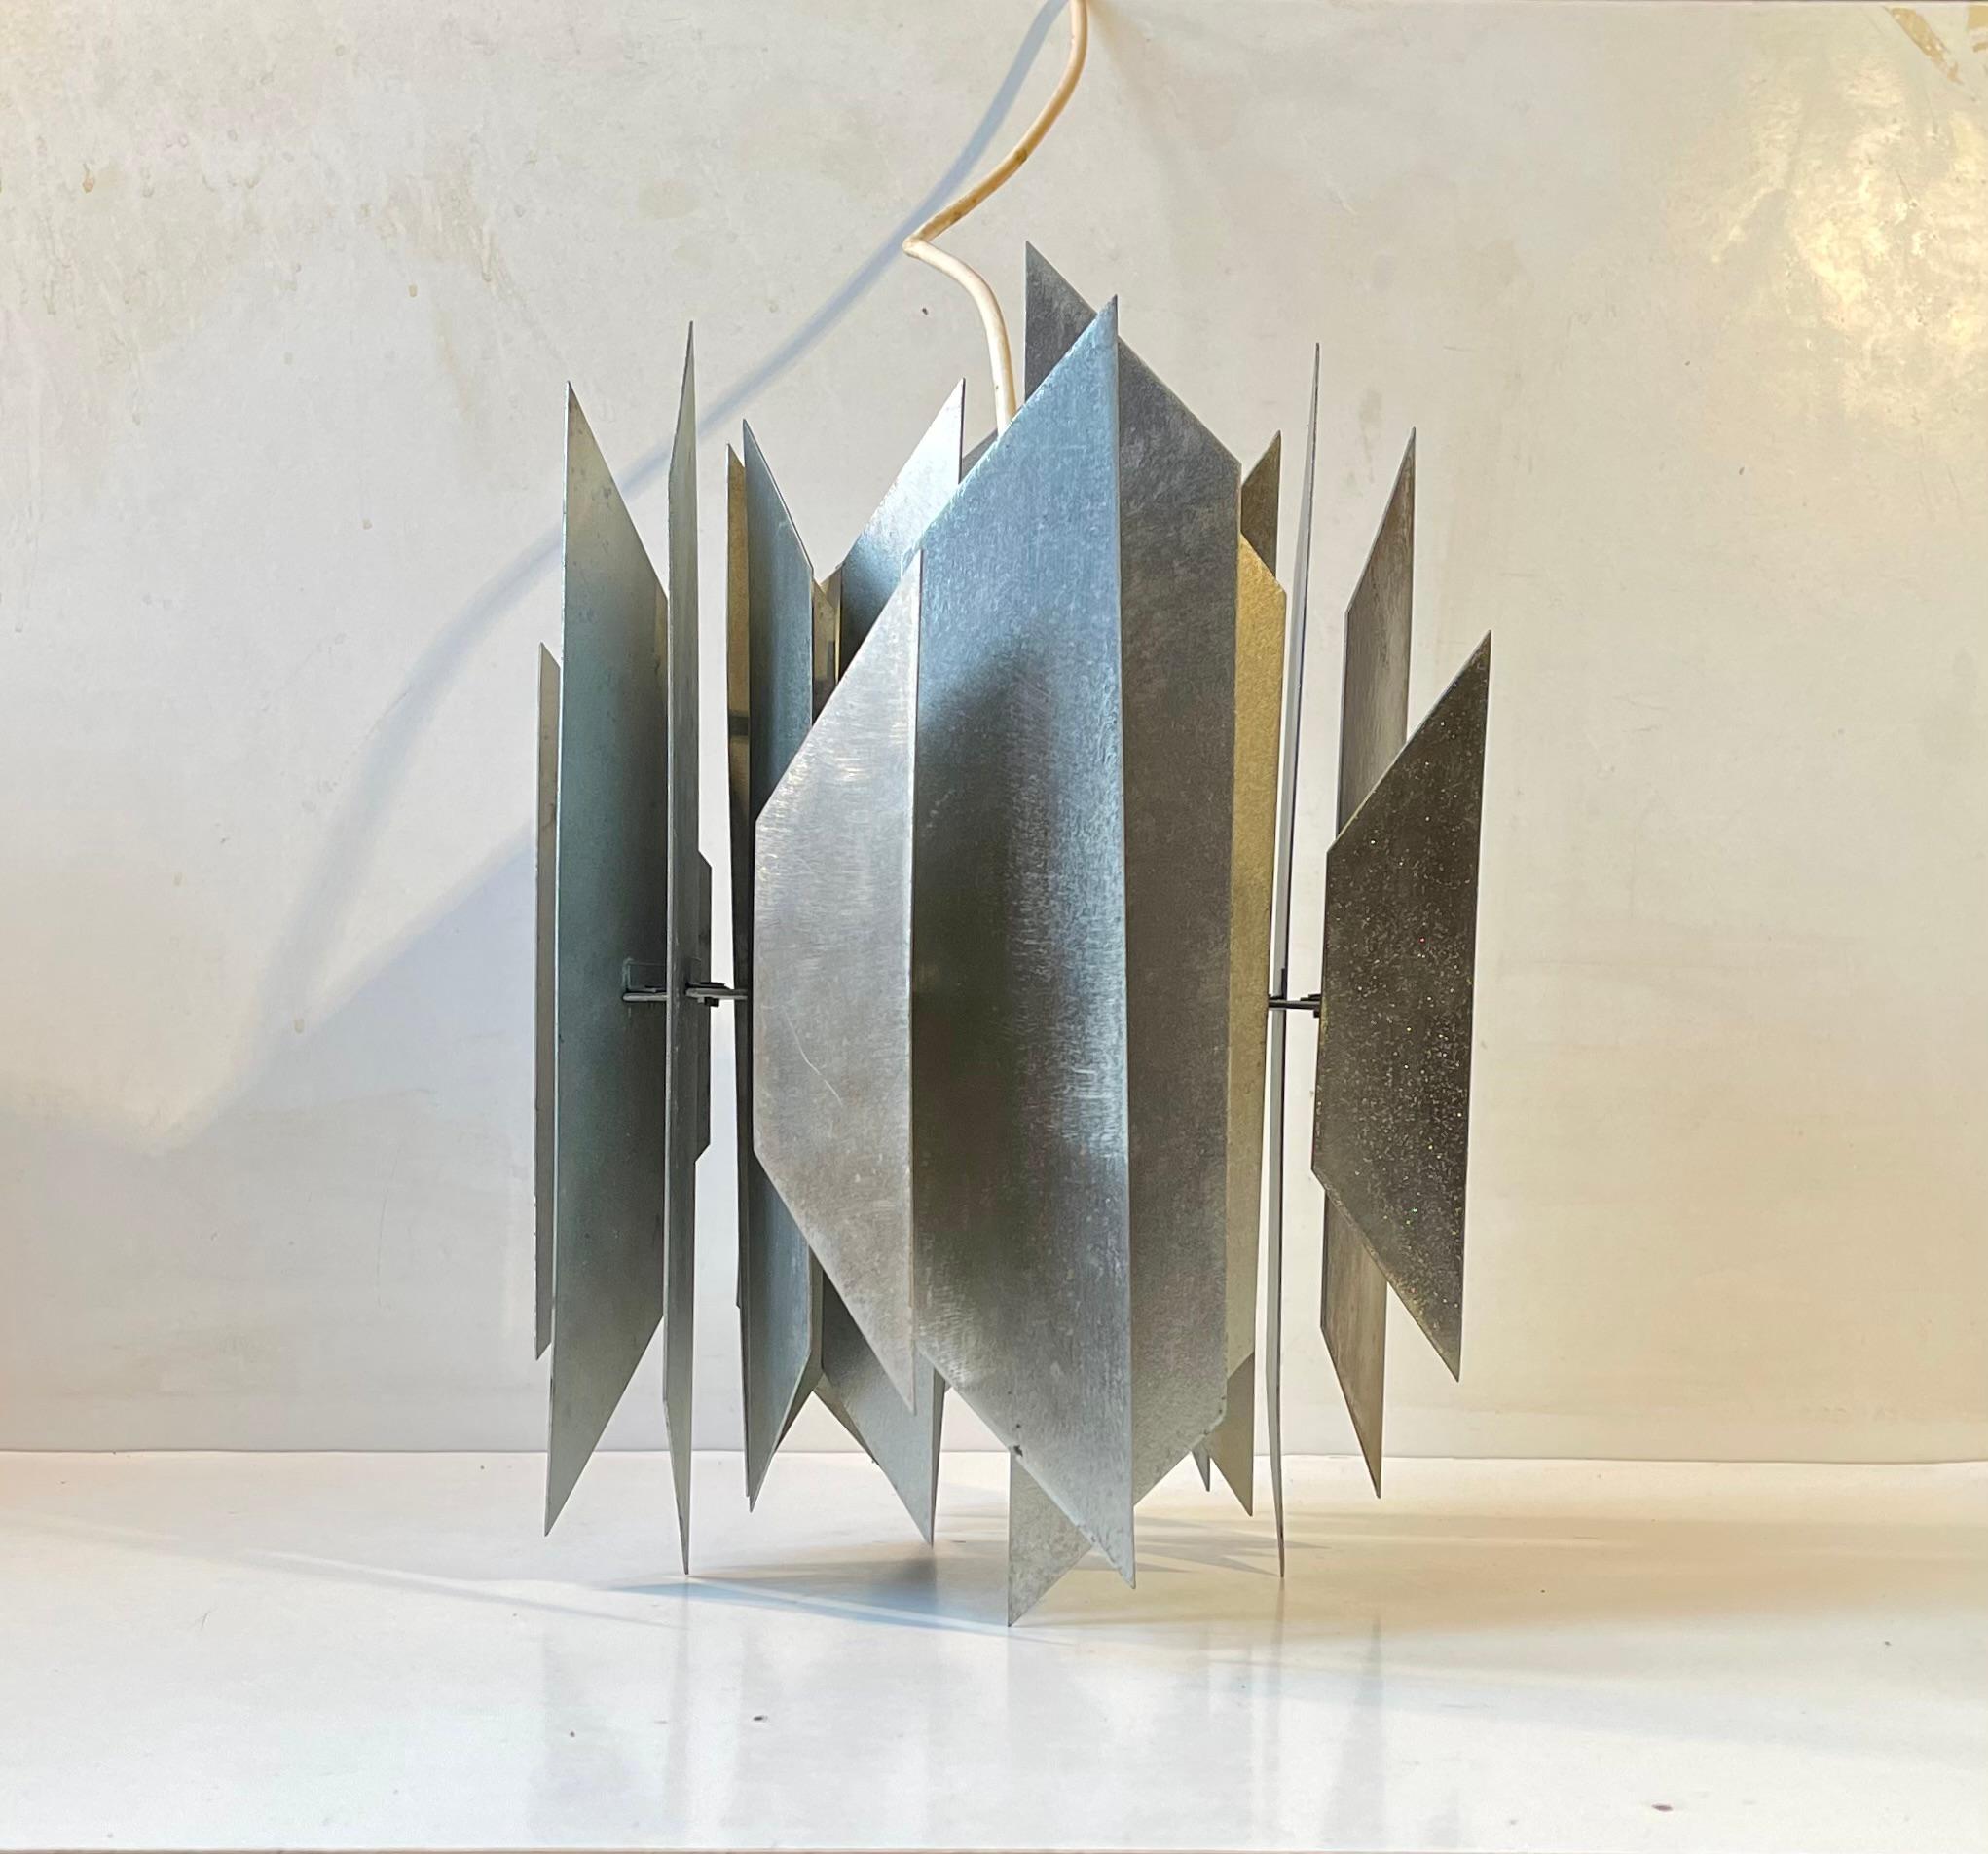 Cette suspension sculpturale de Simon P. Henningsen a été fabriquée par Lyfa et a été conçue à l'origine en 1962 pour le restaurant Divan 2 à Tivoli à Copenhague. Cet exemplaire particulier a été sablé, ce qui lui confère une apparence brutale et